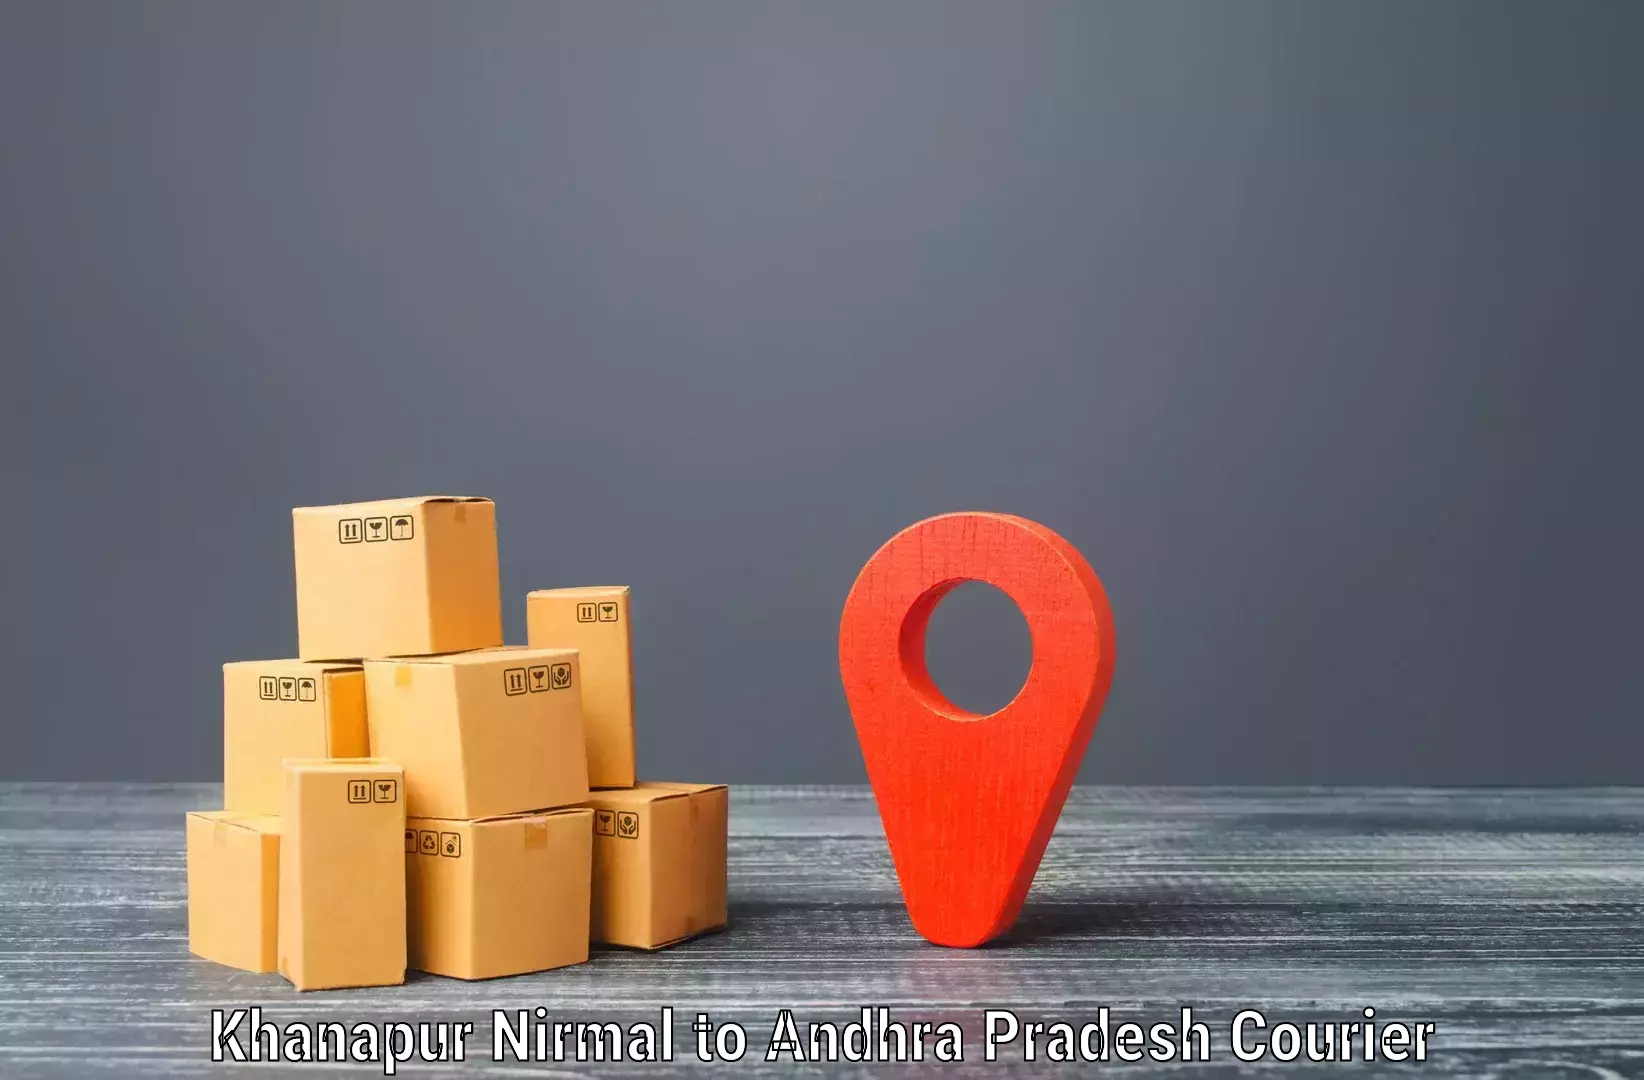 Shipping and handling Khanapur Nirmal to Konduru